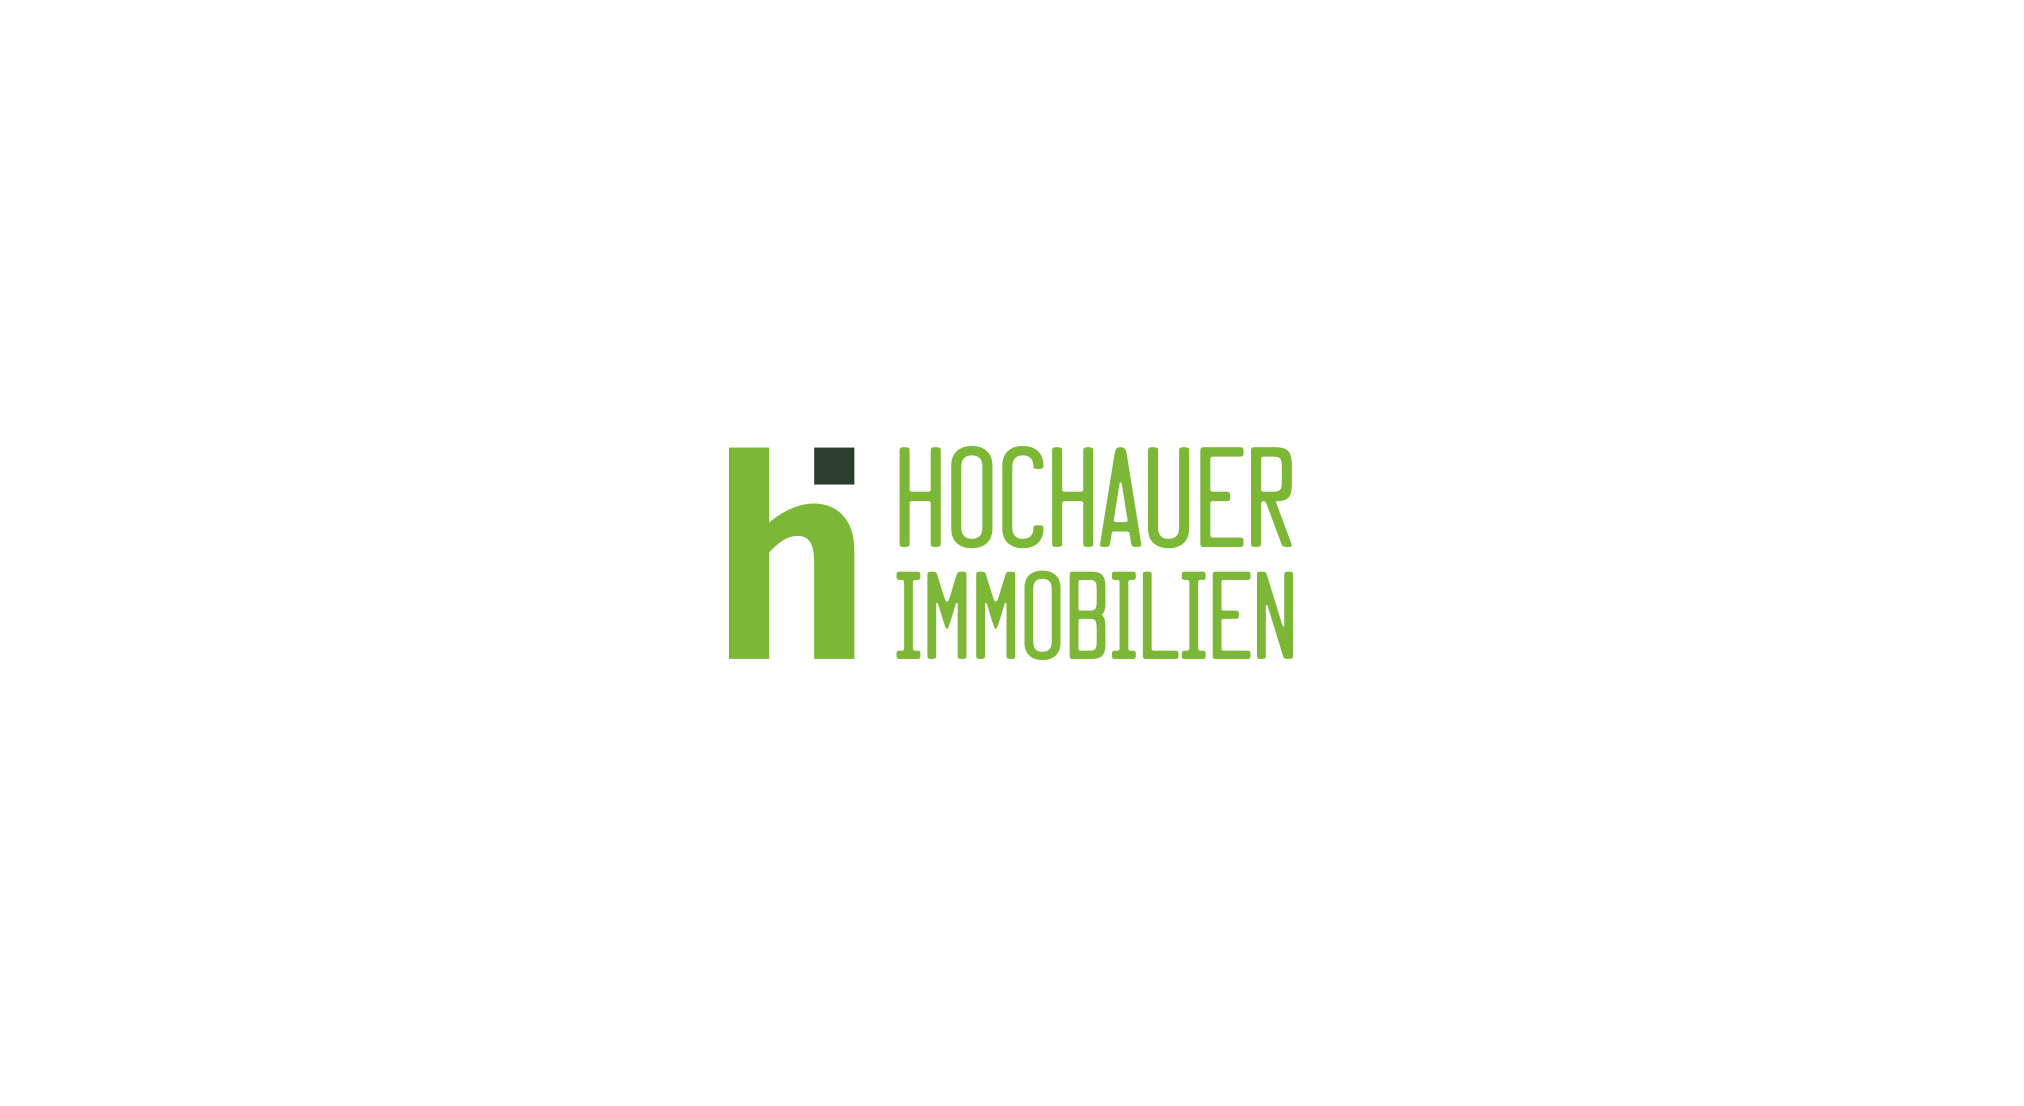 Hochauer Immobilien HI Monogramm in grün